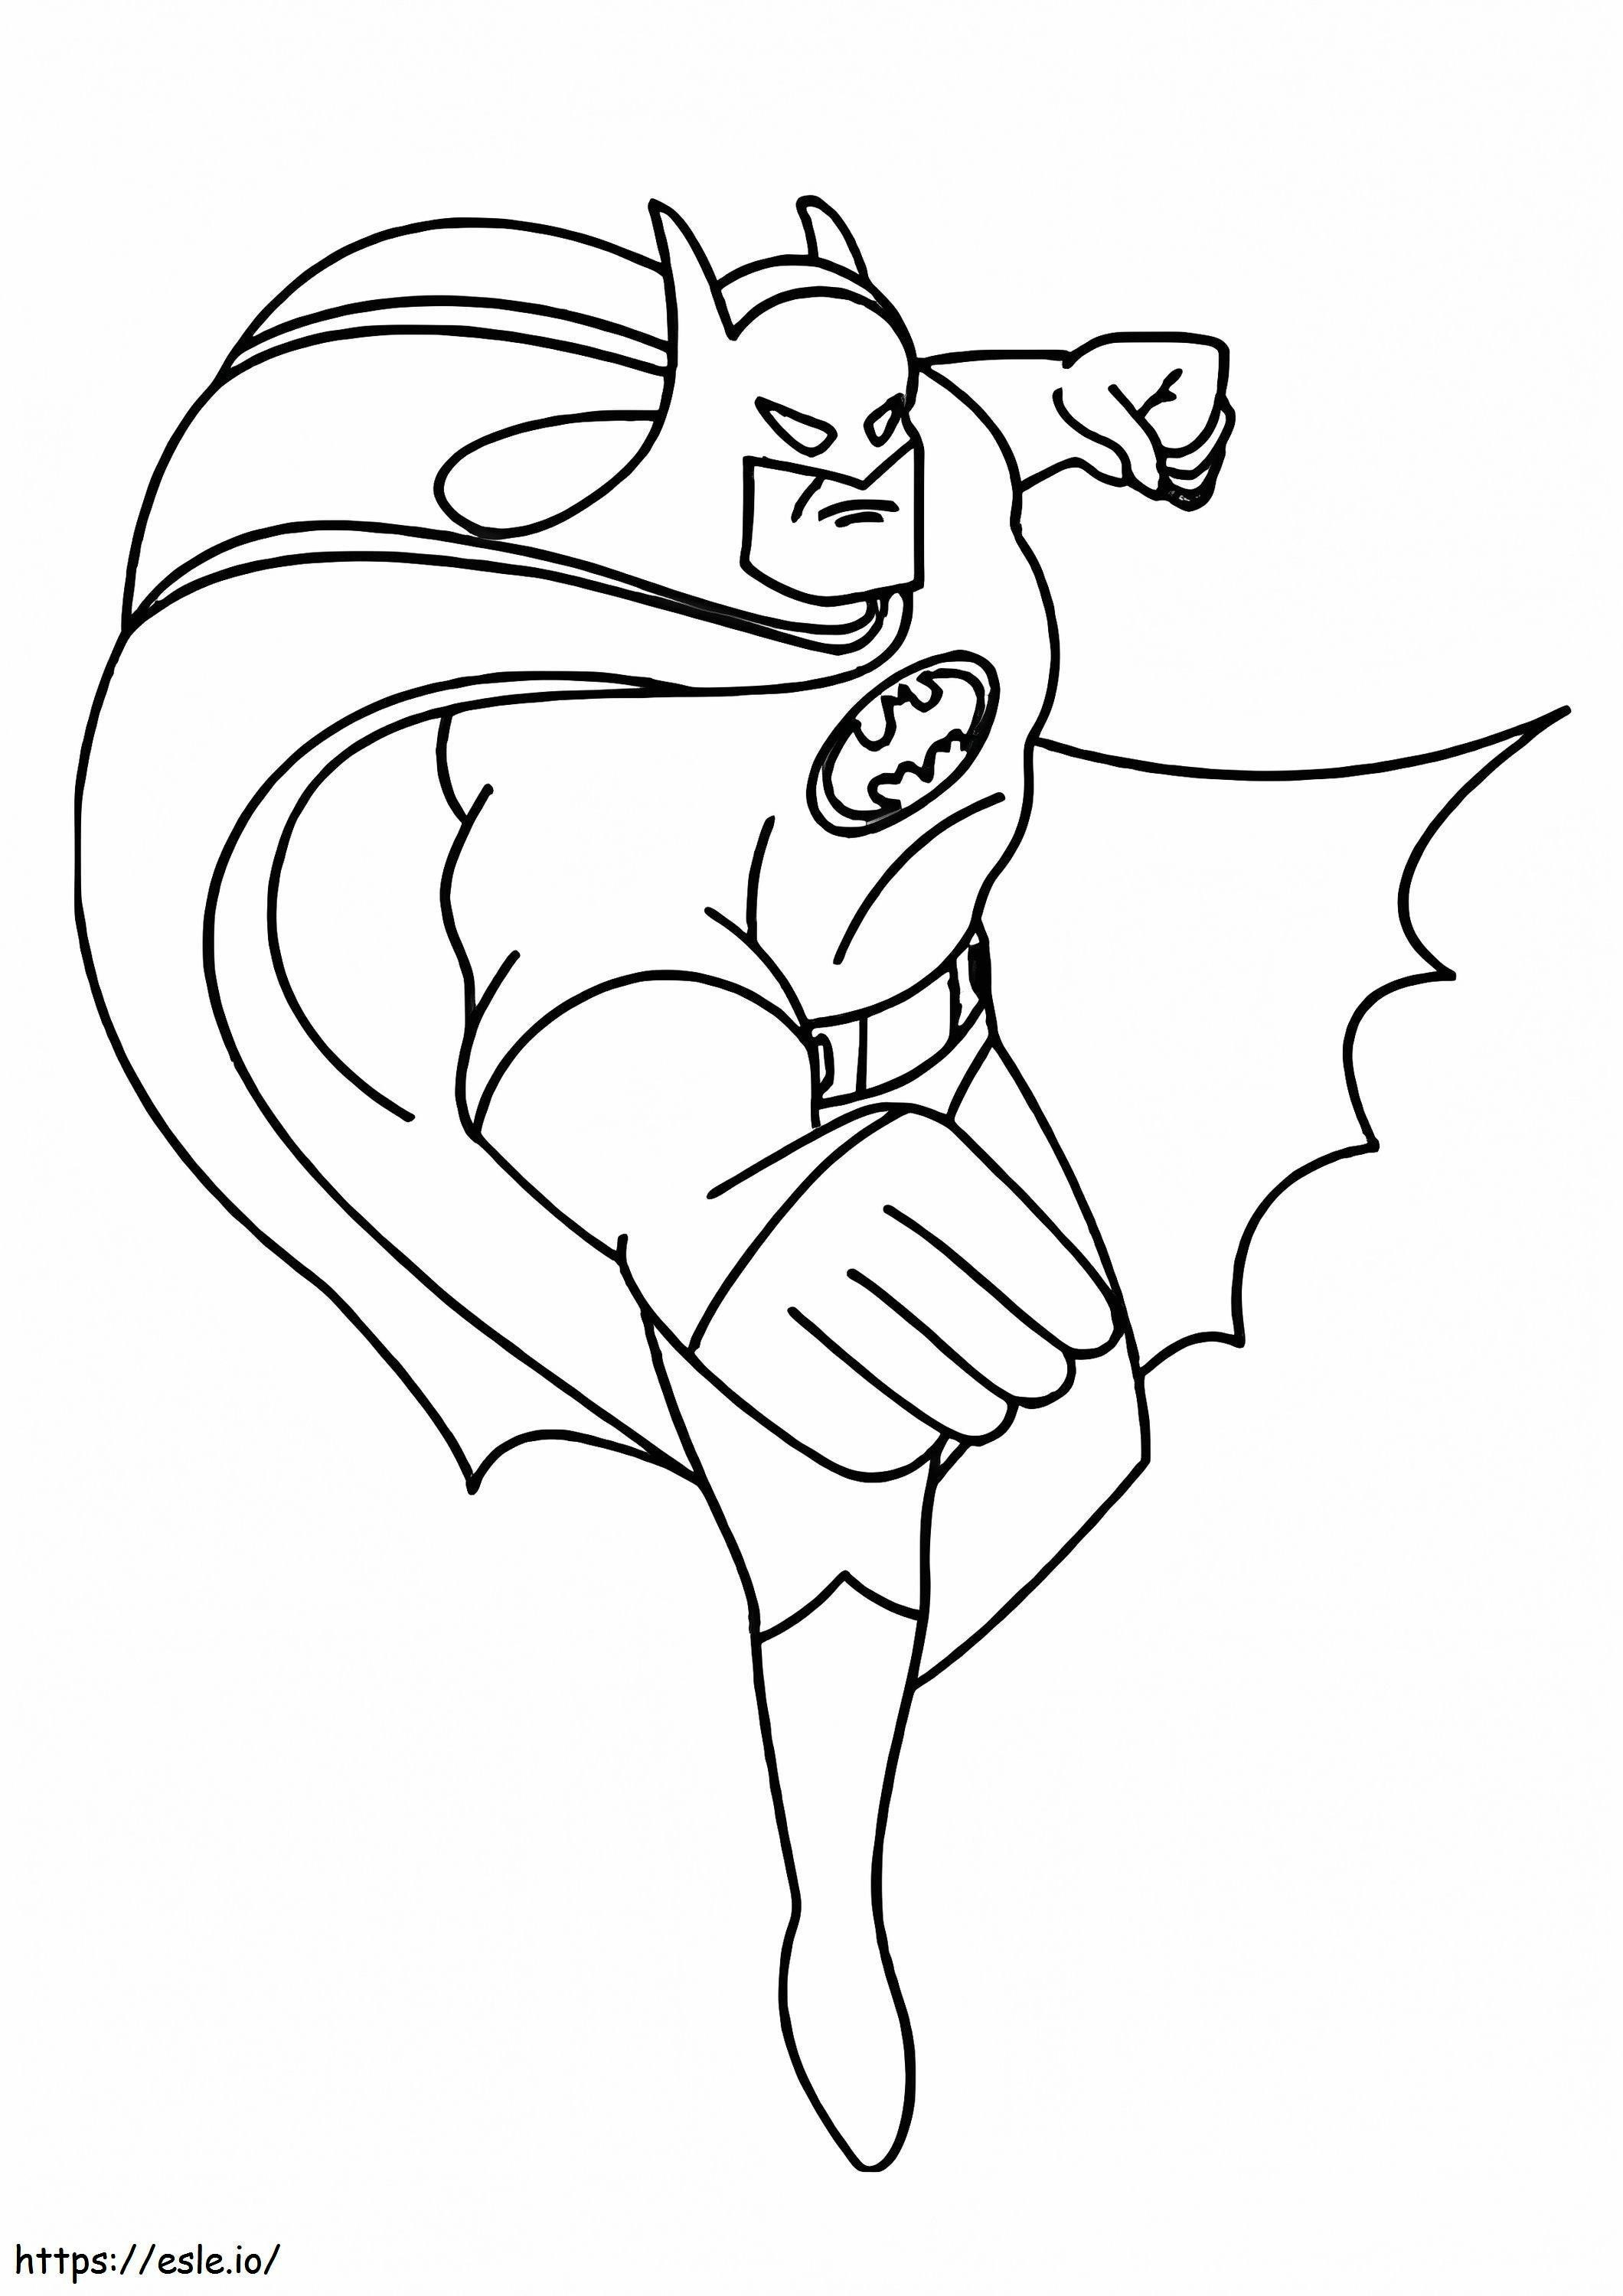 Batmans Punch coloring page